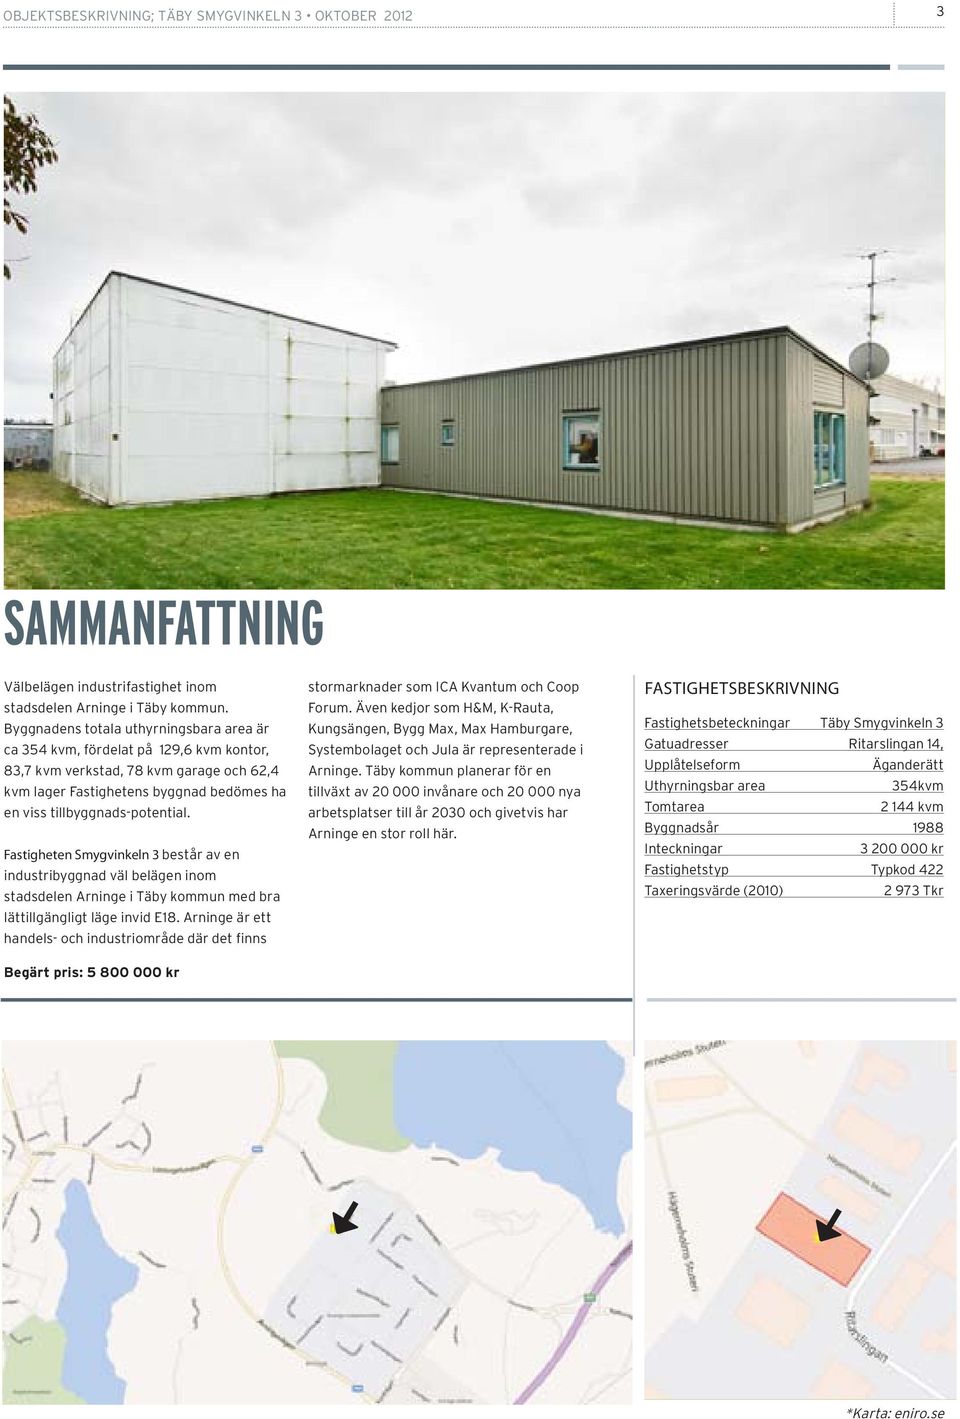 Fastigheten Smygvinkeln 3 består av en industribyggnad väl belägen inom stadsdelen Arninge i Täby kommun med bra lättillgängligt läge invid E18.